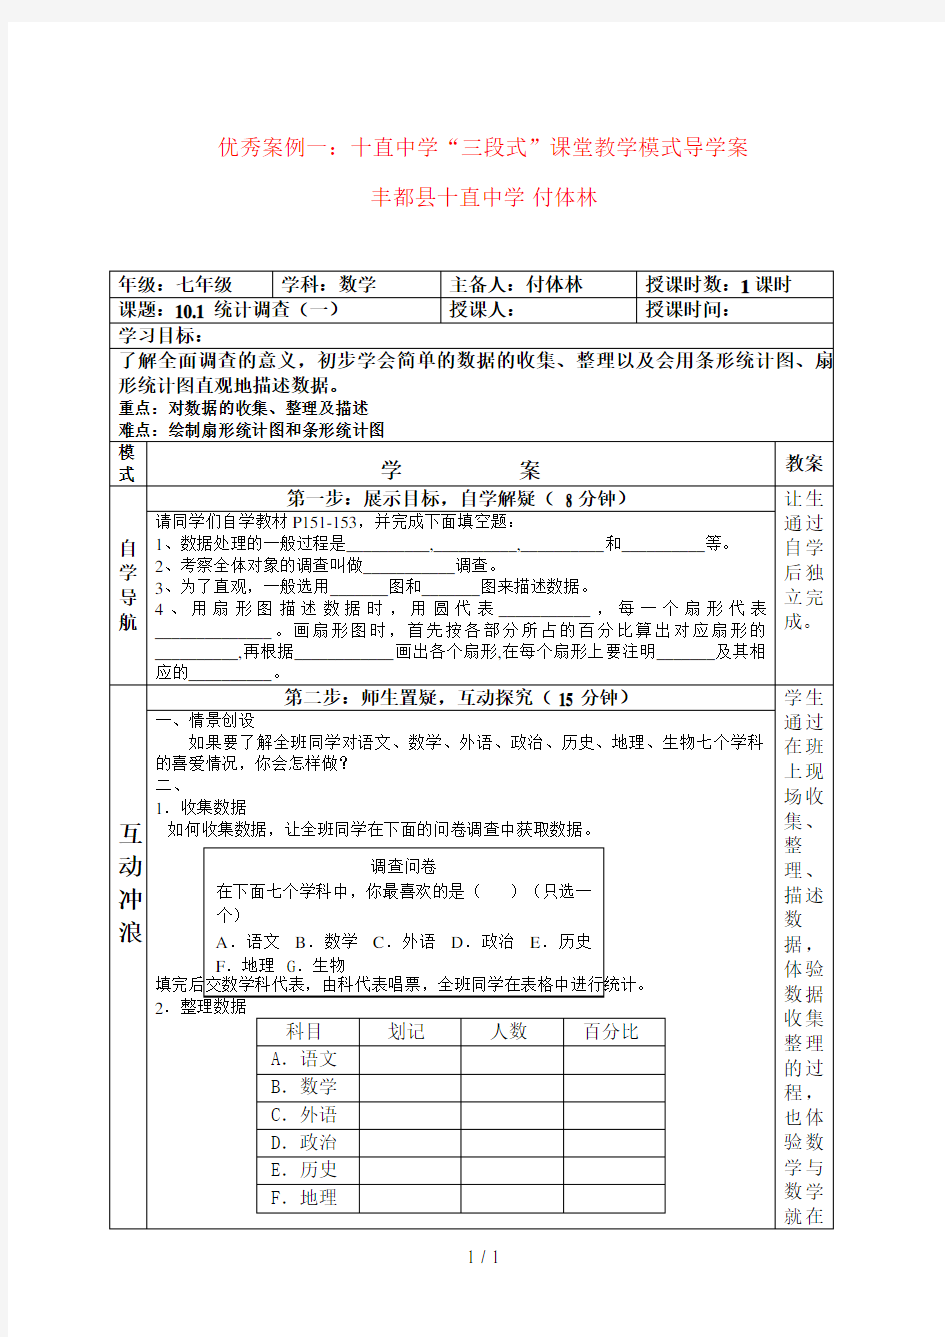 重庆市“国培计划(2012年)”—农村义务教育学科教学能力提升混合培训项目